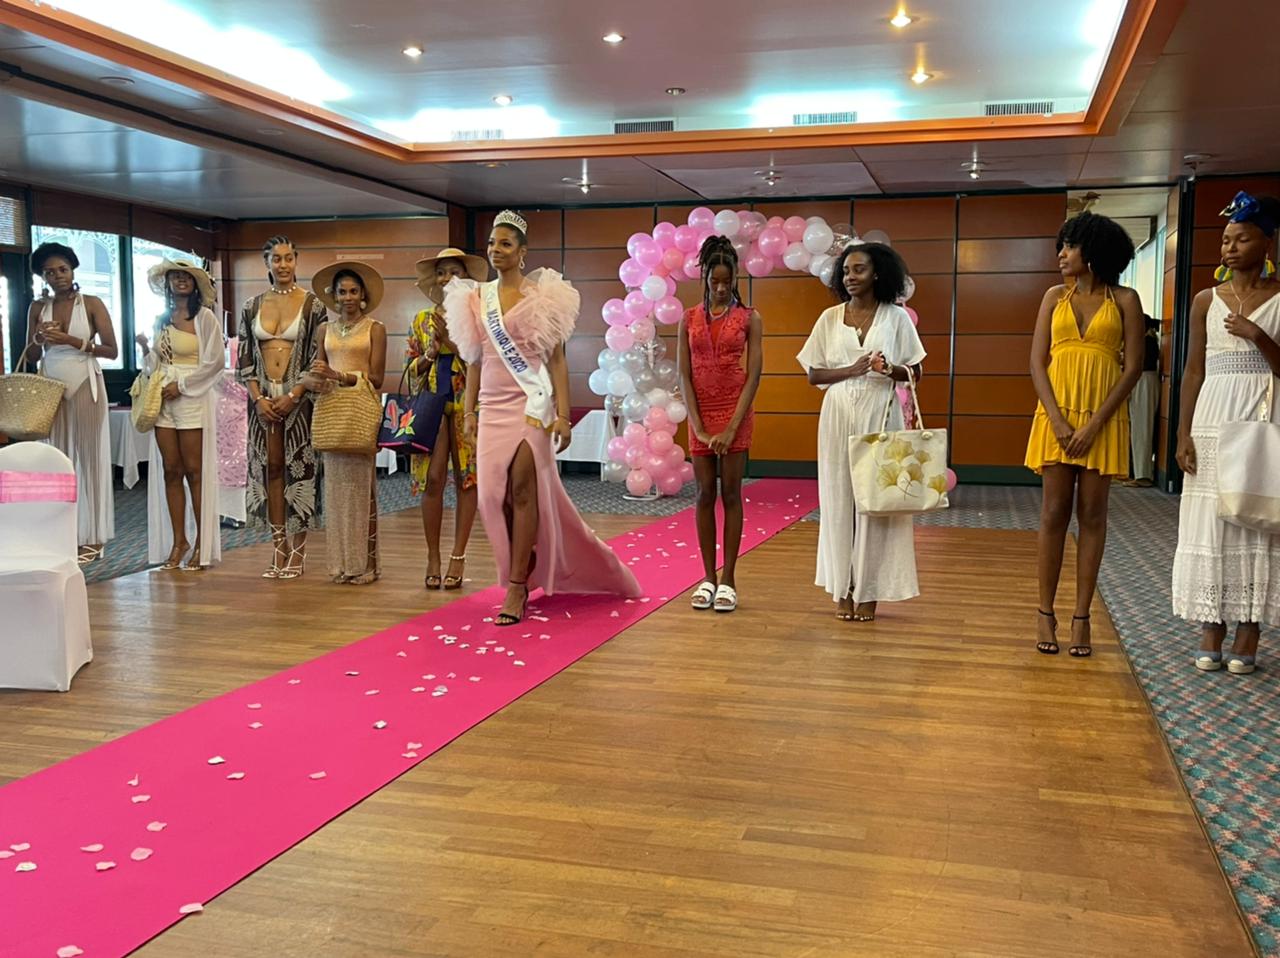     L'élection de Miss Martinique à la recherche de la future reine de beauté

